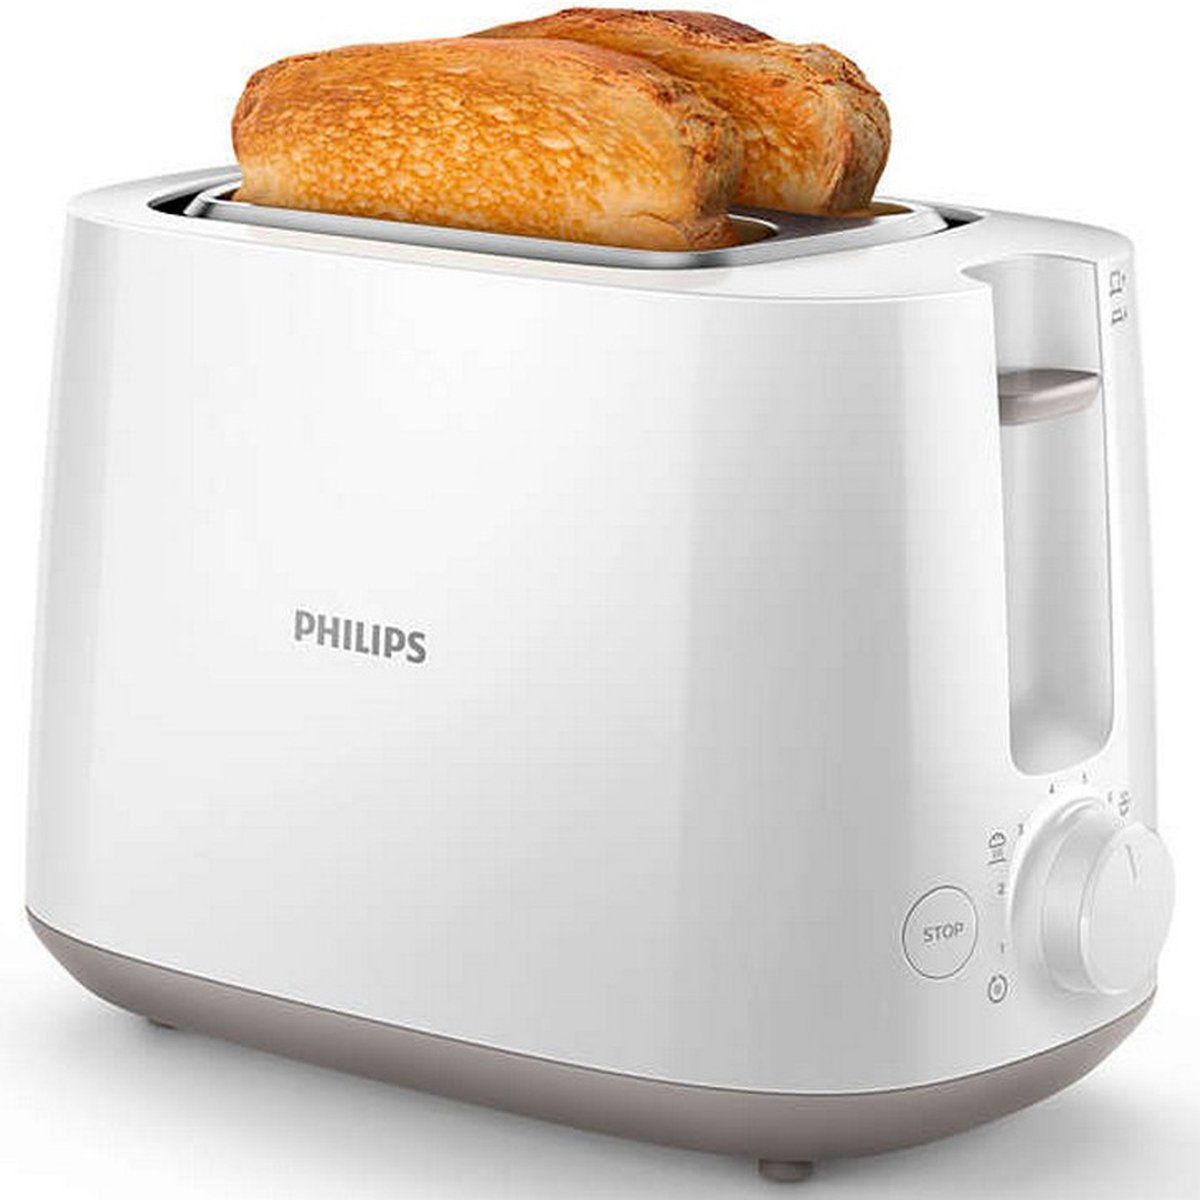 اشتري قم بشراء فيليبس حماصة HD2581/01 800 واط Online at Best Price من الموقع - من لولو هايبر ماركت Bread Toasters في الامارات